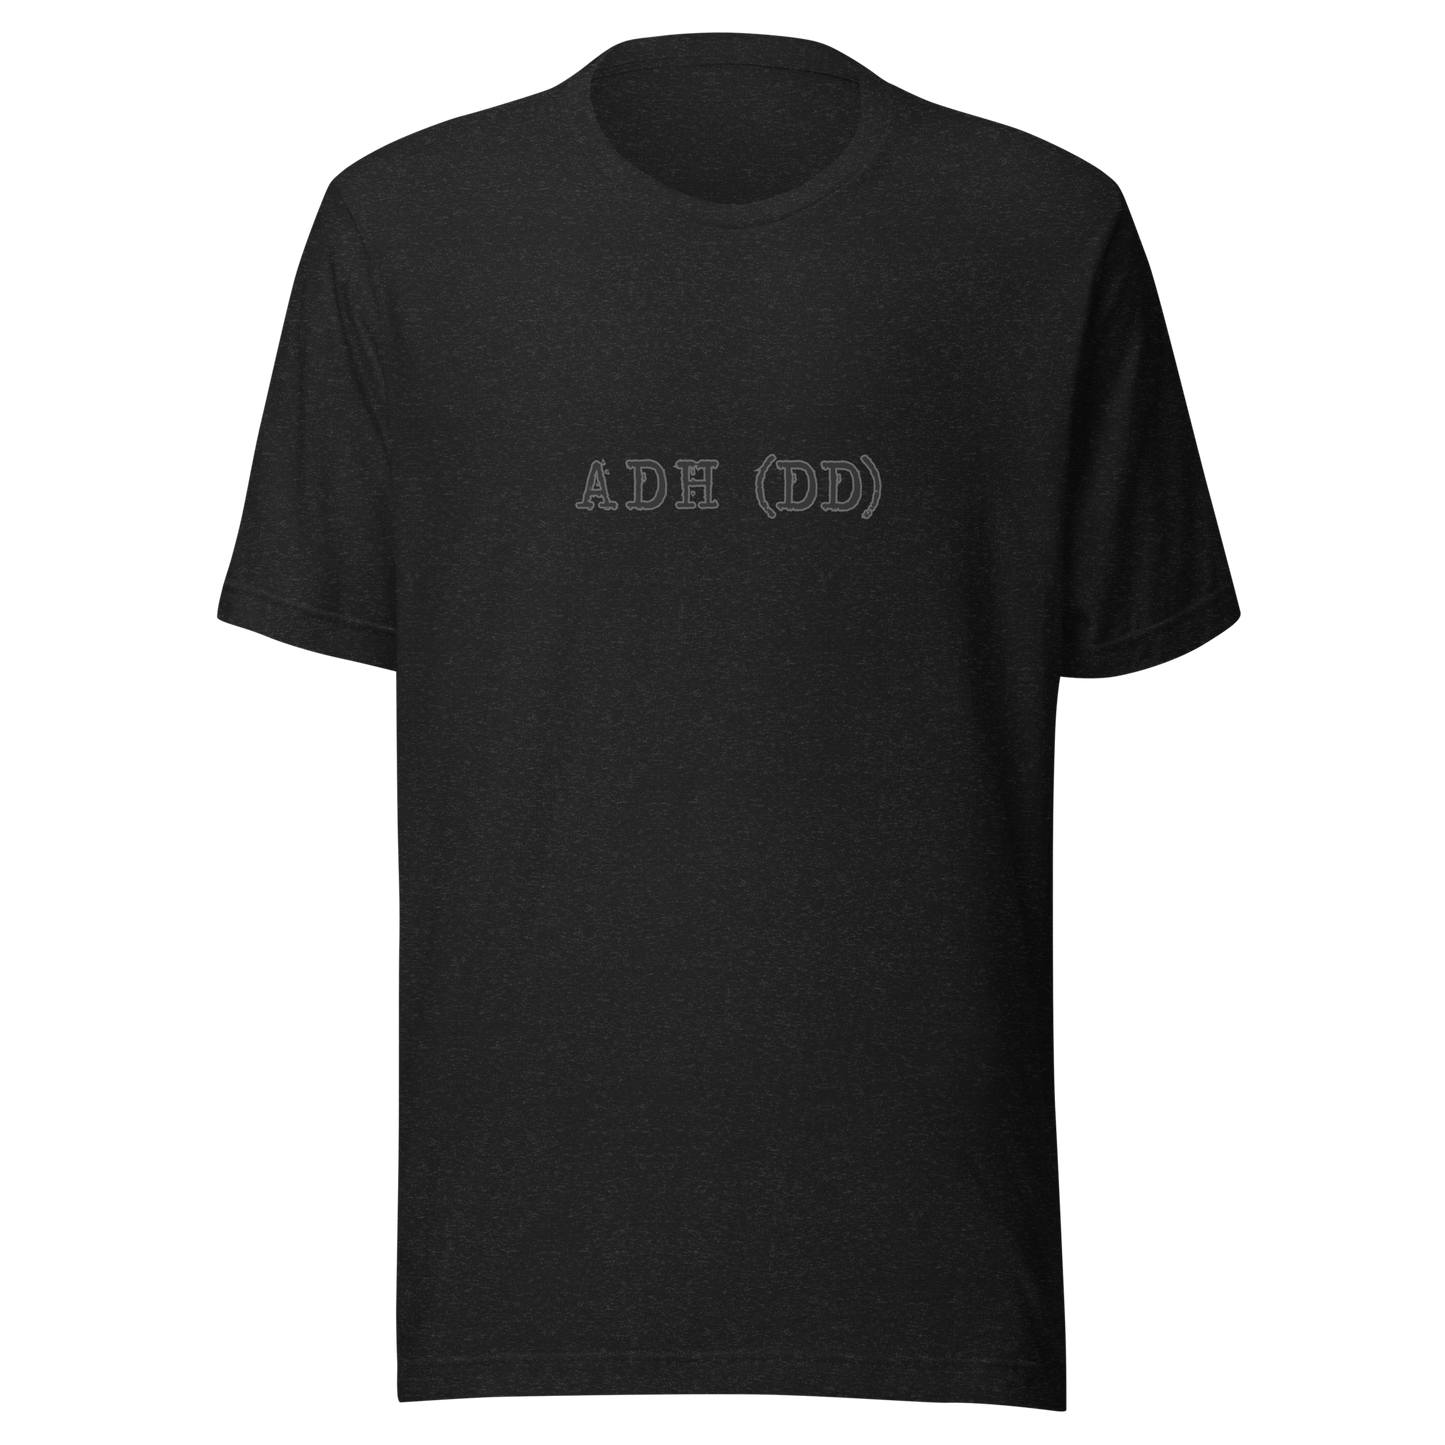 adh(dd) t-shirt in black - gaslit apparel